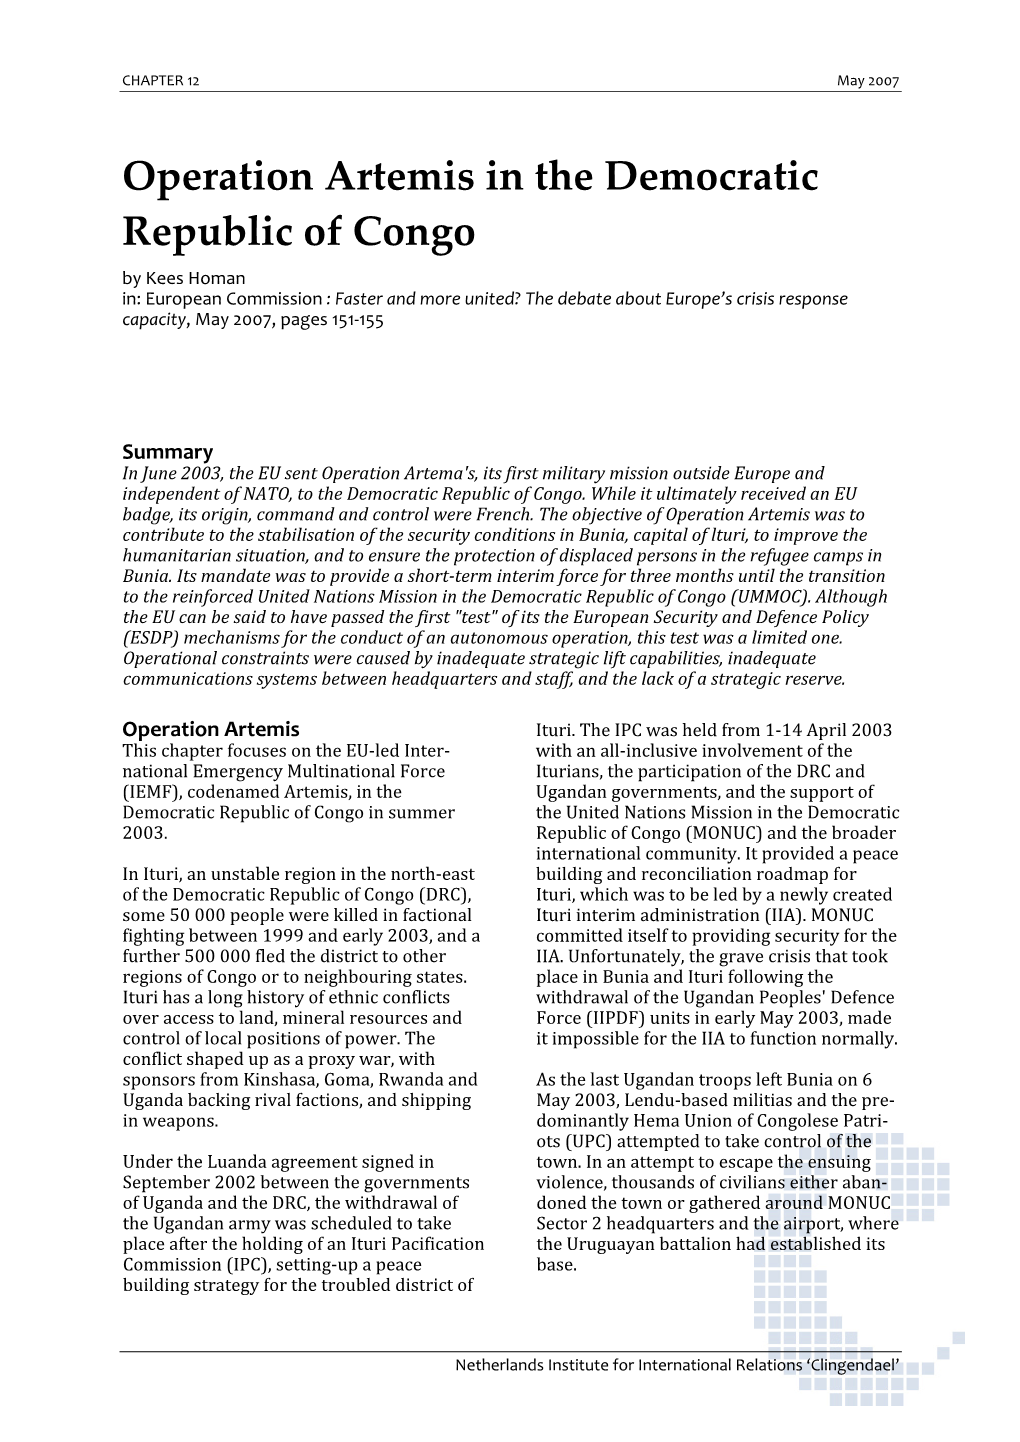 Operation Artemis in the Democratic Republic of Congo